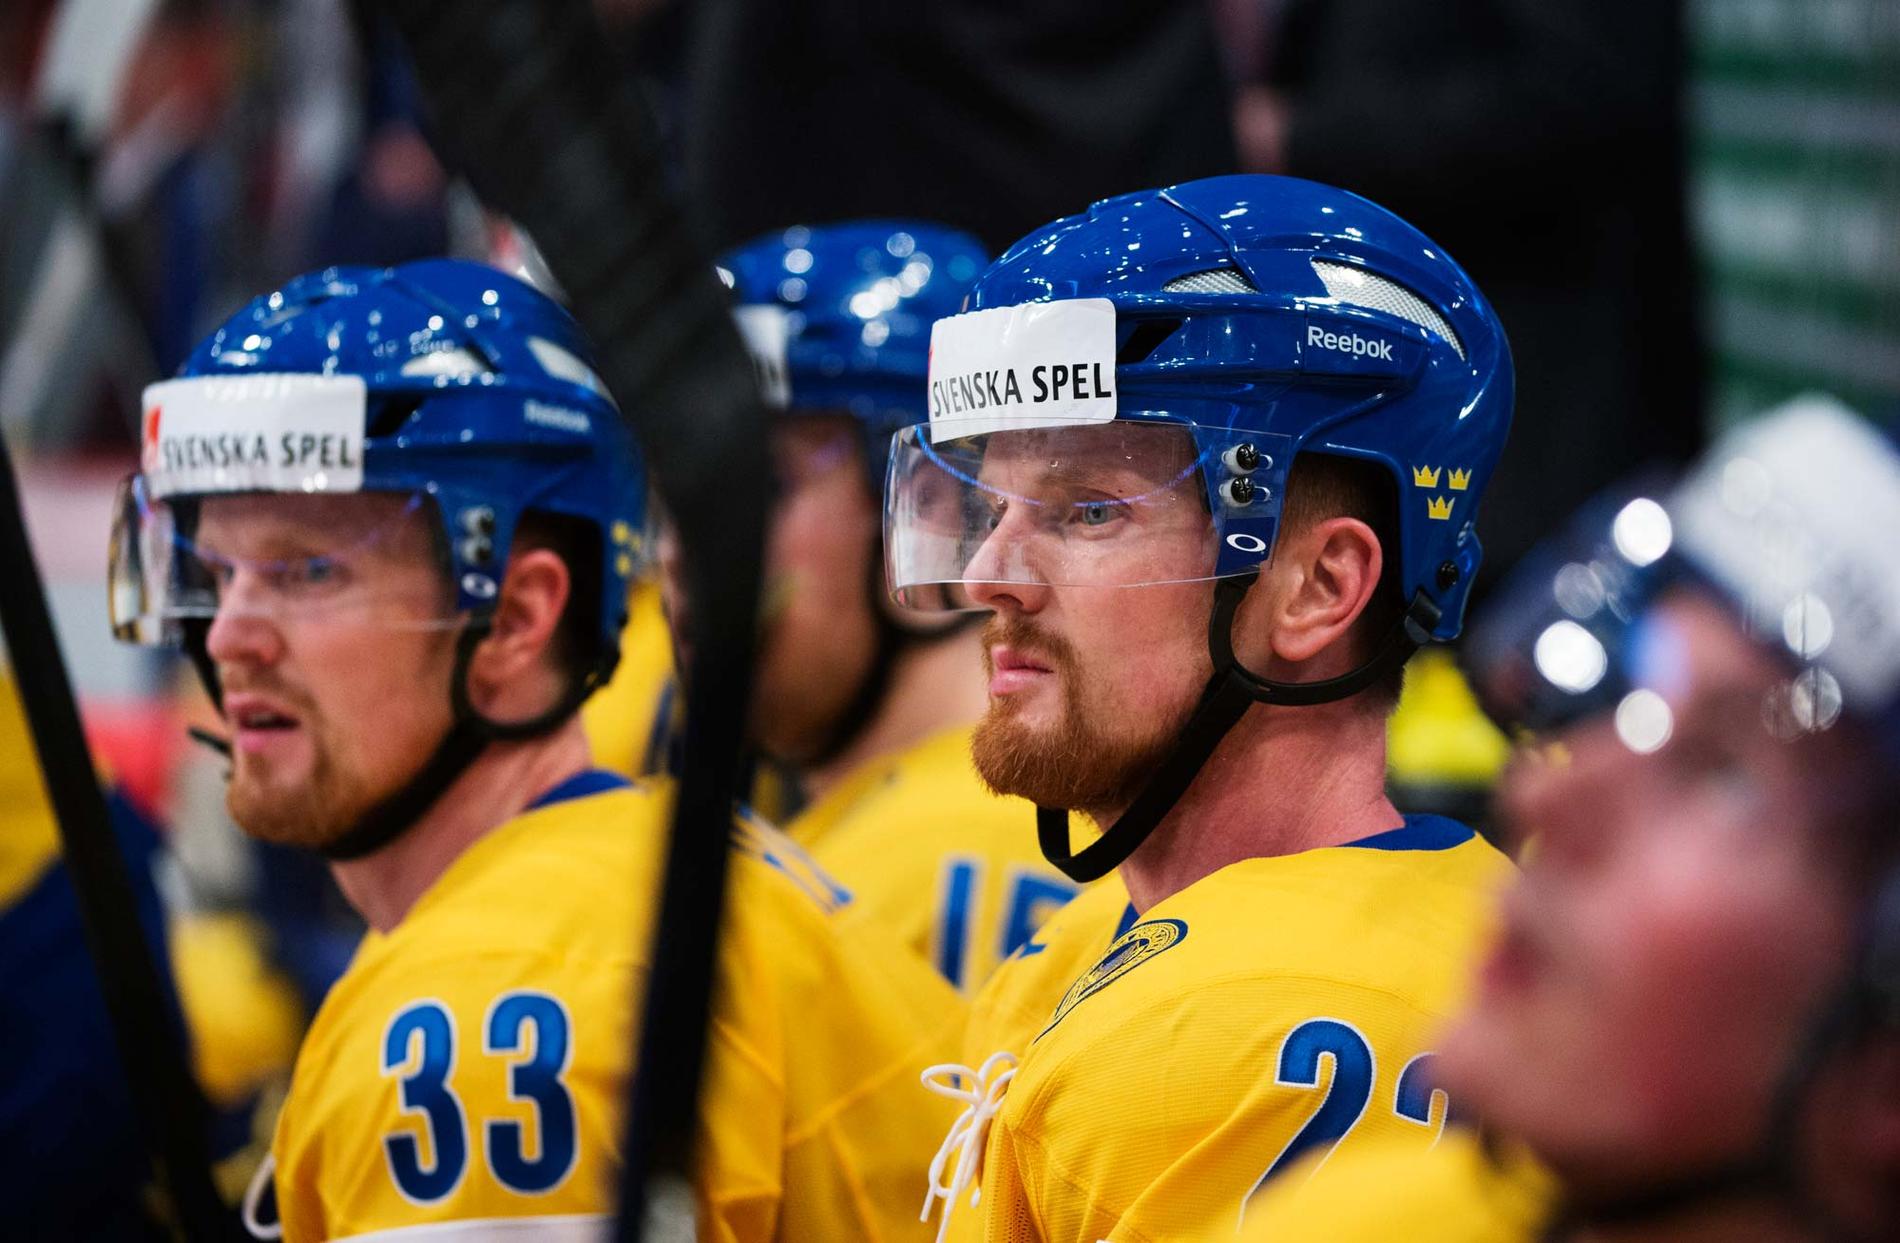 Trots tvillingarna Sedins ankomst så tror varken spelbolagens oddssättare eller de svenska spelarna på Tre Kronor i kvartsfinalen mot Kanada.